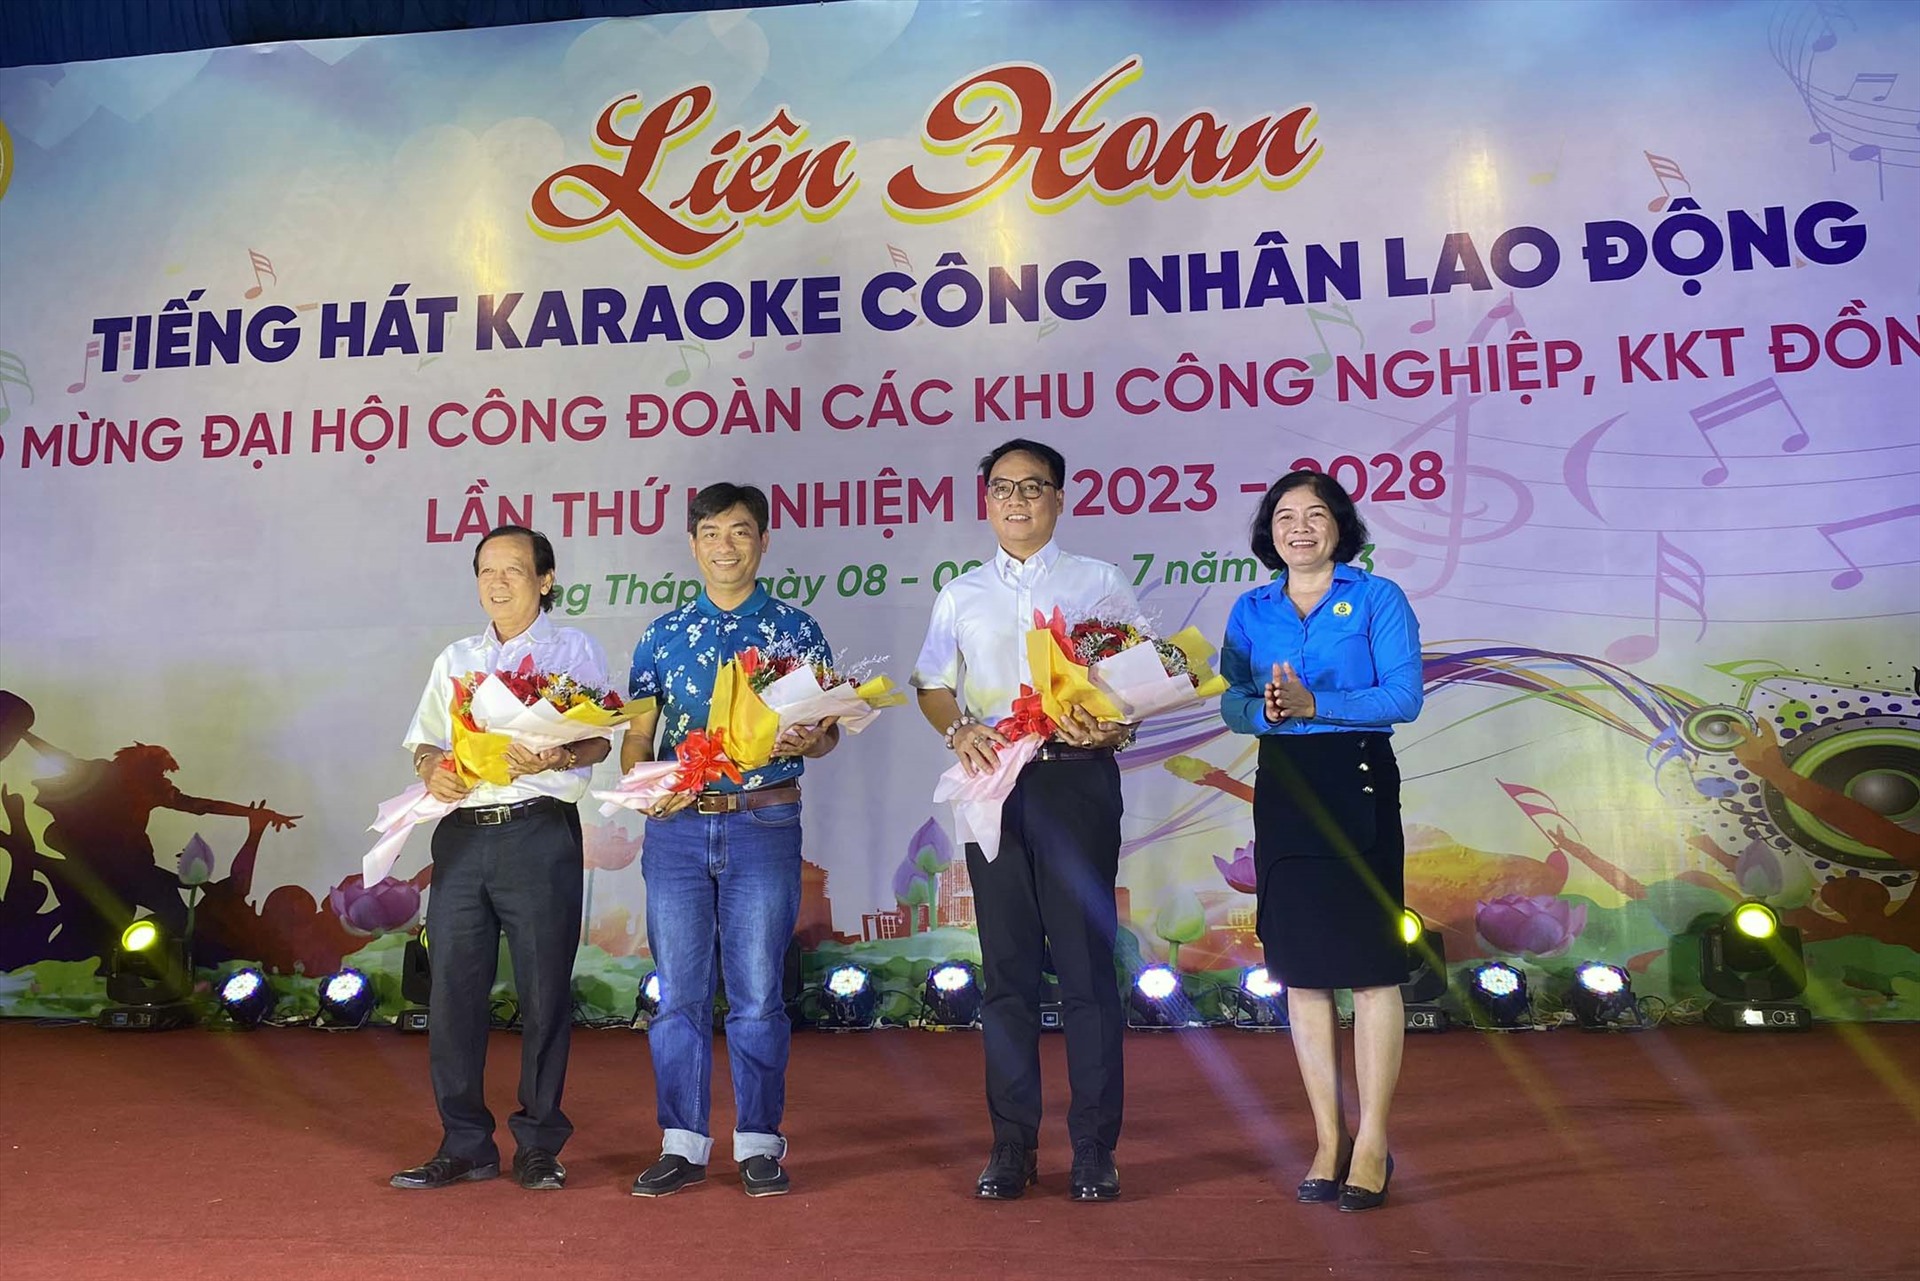 Chủ tịch Công đoàn các khu công nghiệp, khu kinh tế tặng hoa cho ban giám khảo Liên hoan tiếng hát Karaoke chào mừng Đại hội Công đoàn các khu công nghiệp, khu kinh tế Đồng Tháp. Ảnh: Thanh Nhàn